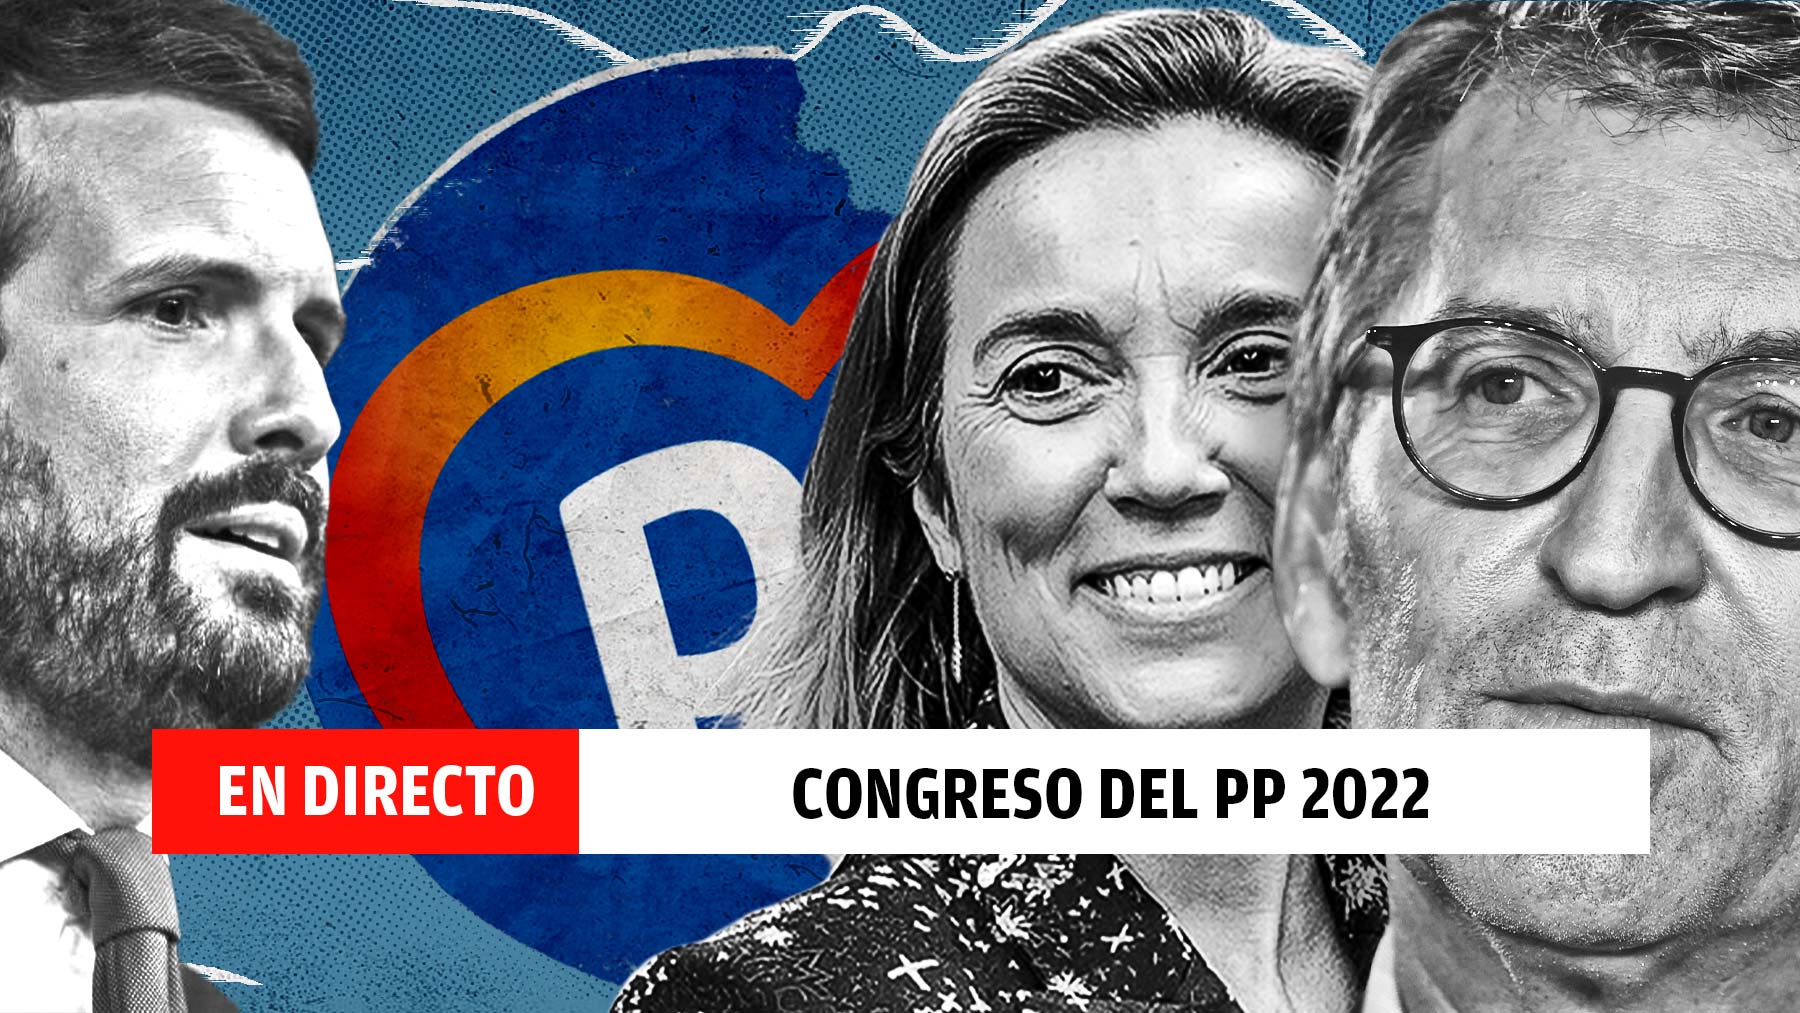 Congreso del PP 2022 en Sevilla, en directo.